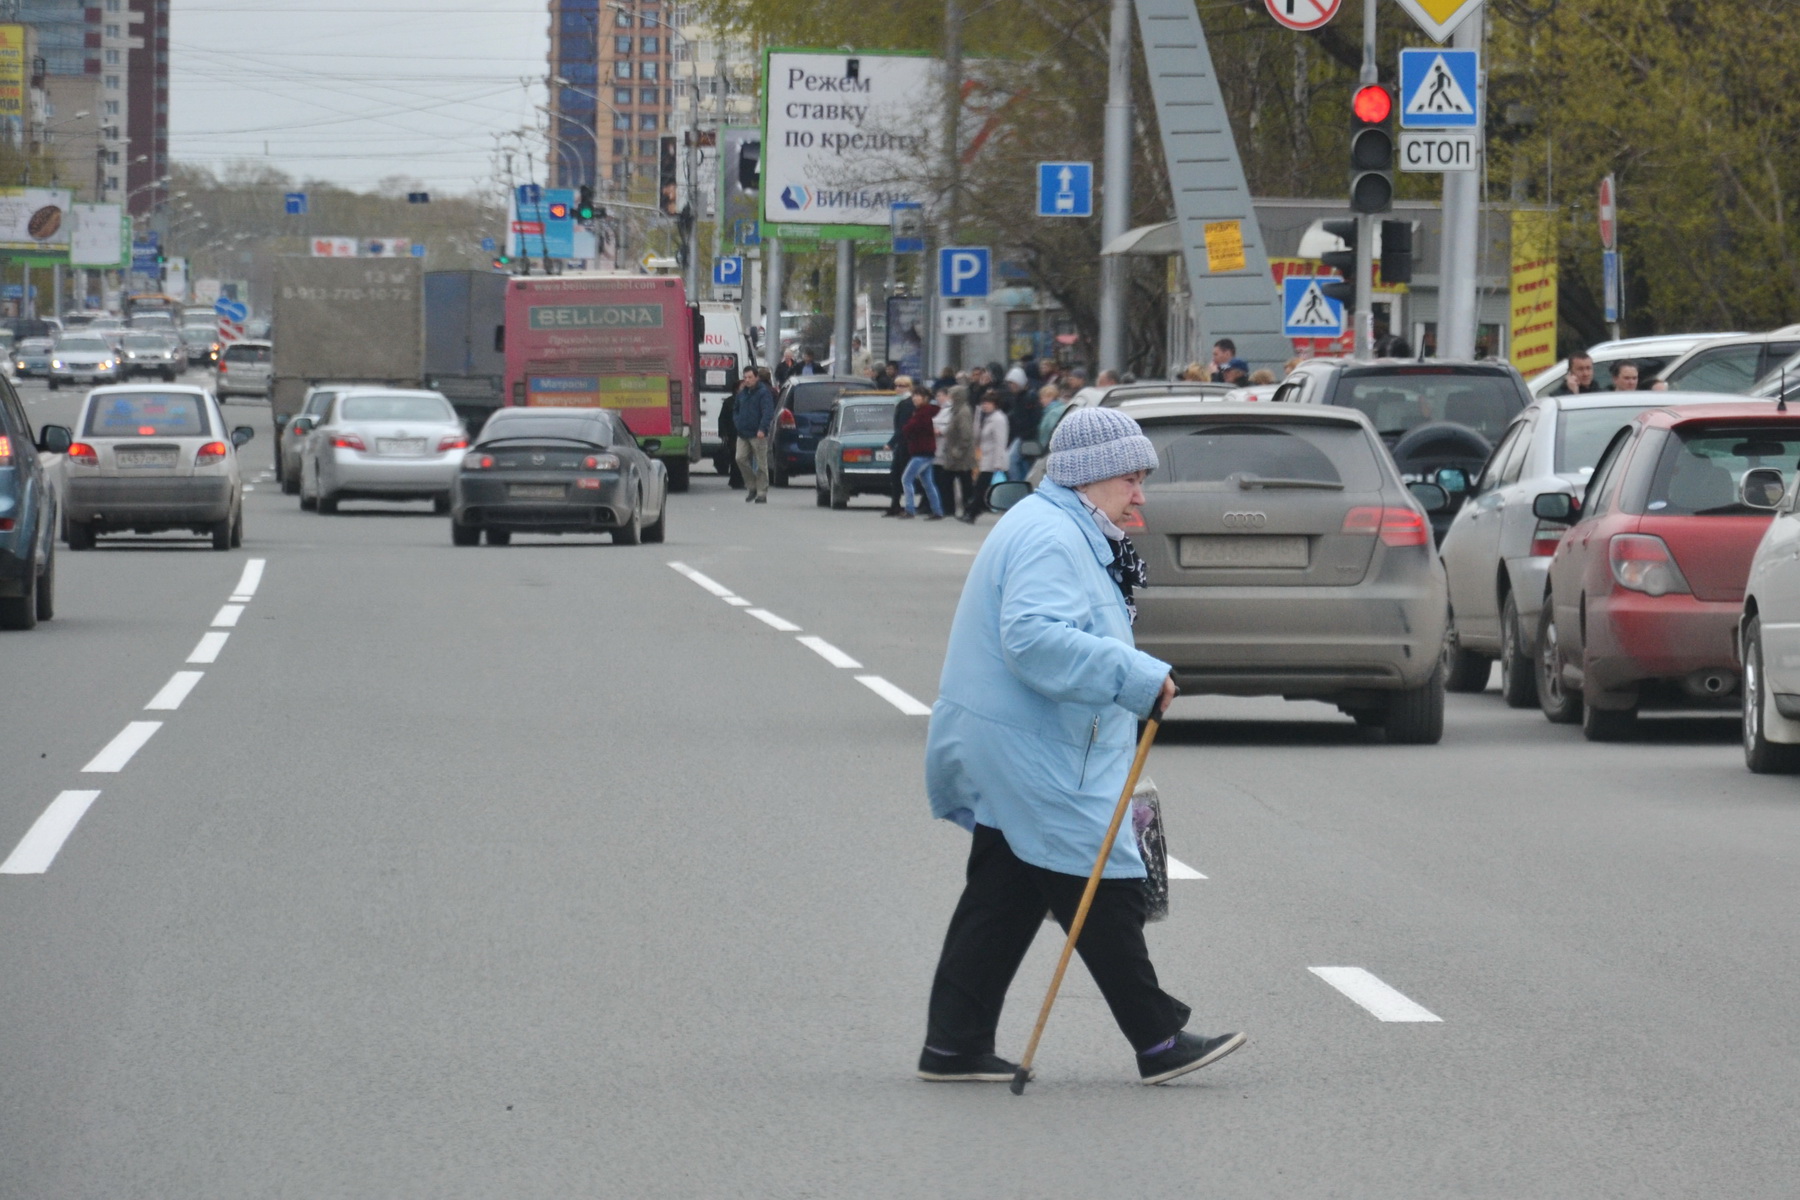 Пешеход нарушивший правила. Пешеход в неположенном месте. Пешеход на проезжей части. Бабка на дороге. Переходит дорогу в неположенном месте.